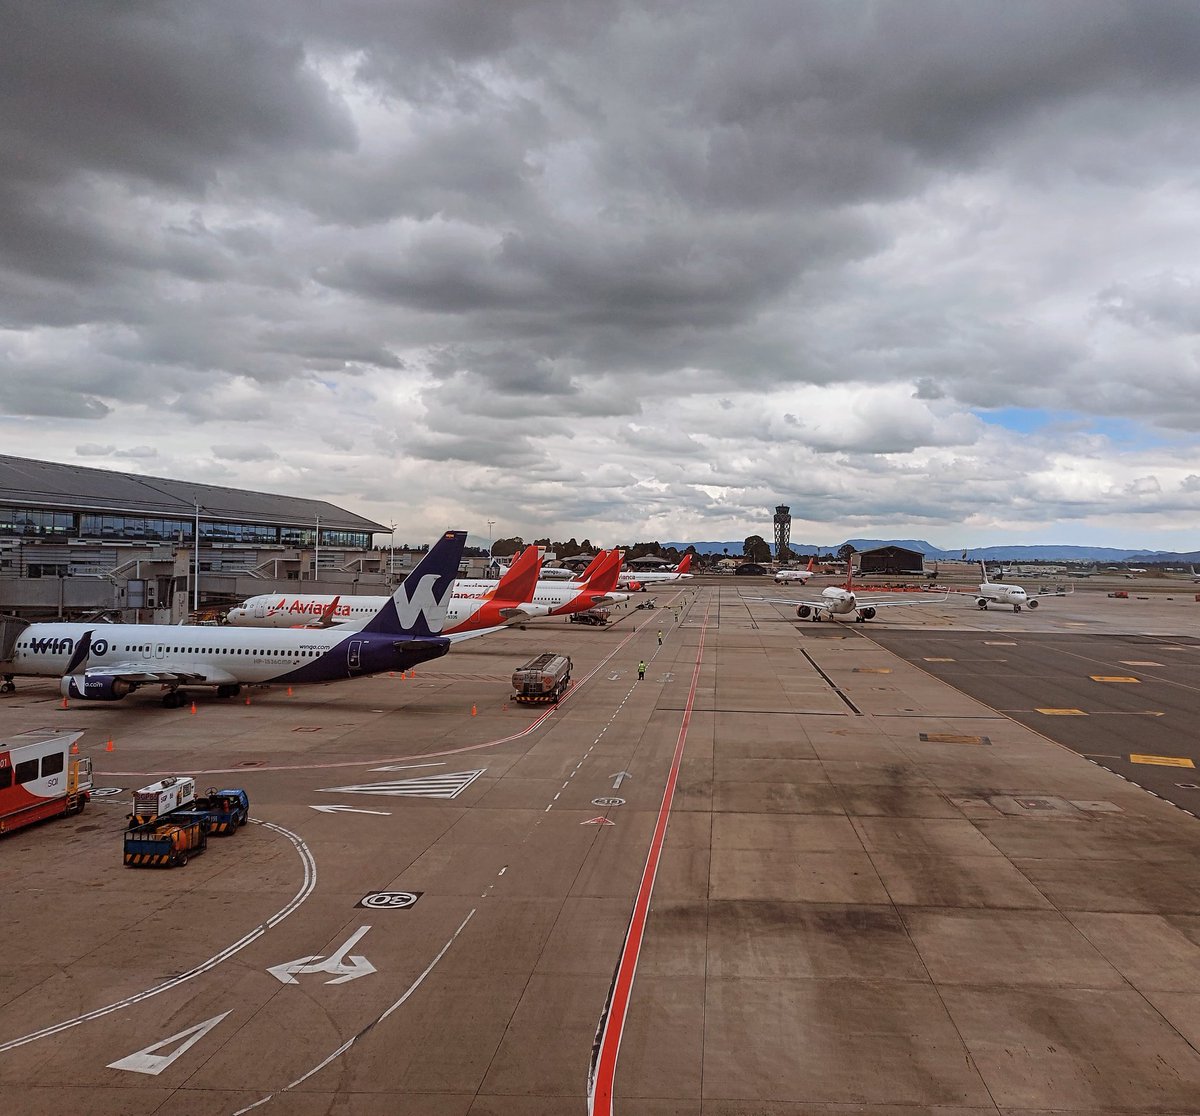 El @BOG_ELDORADO .. 
#airport #airportlife #planespotting #avianca #wingo